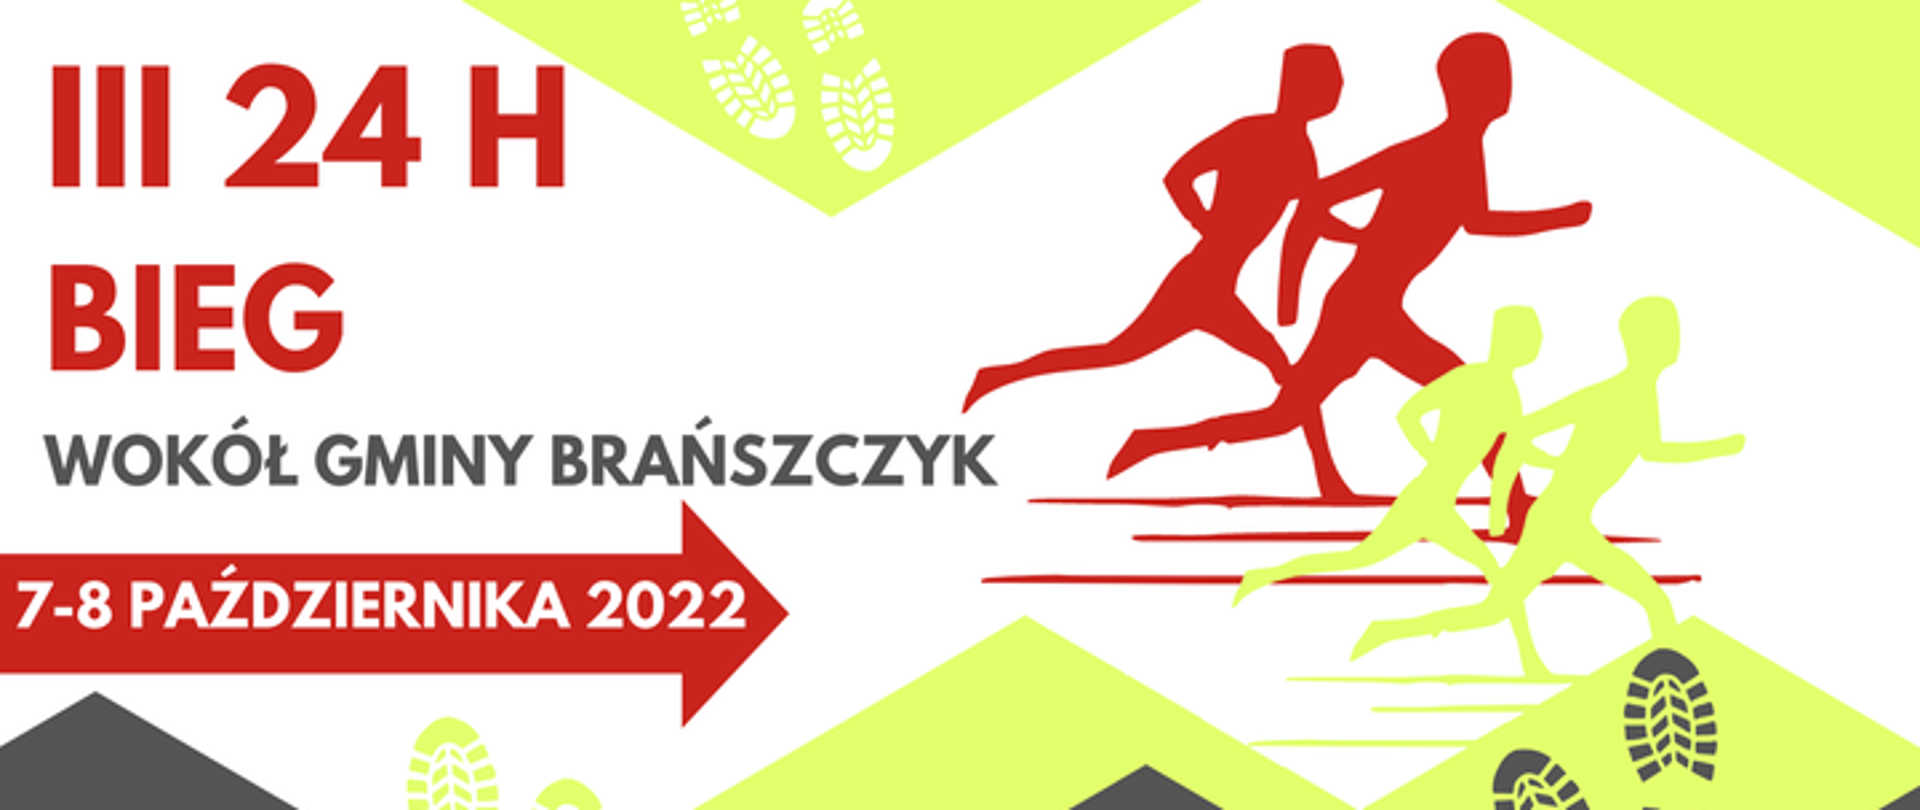 Plakat z treścią: "III 24 godzinny bieg wokół gminy Brańszczyk 7-8 października 2022", sylwetki biegnących ludzi. Poniżej wymienieni organizatorzy, partnerzy i ich logotypy.